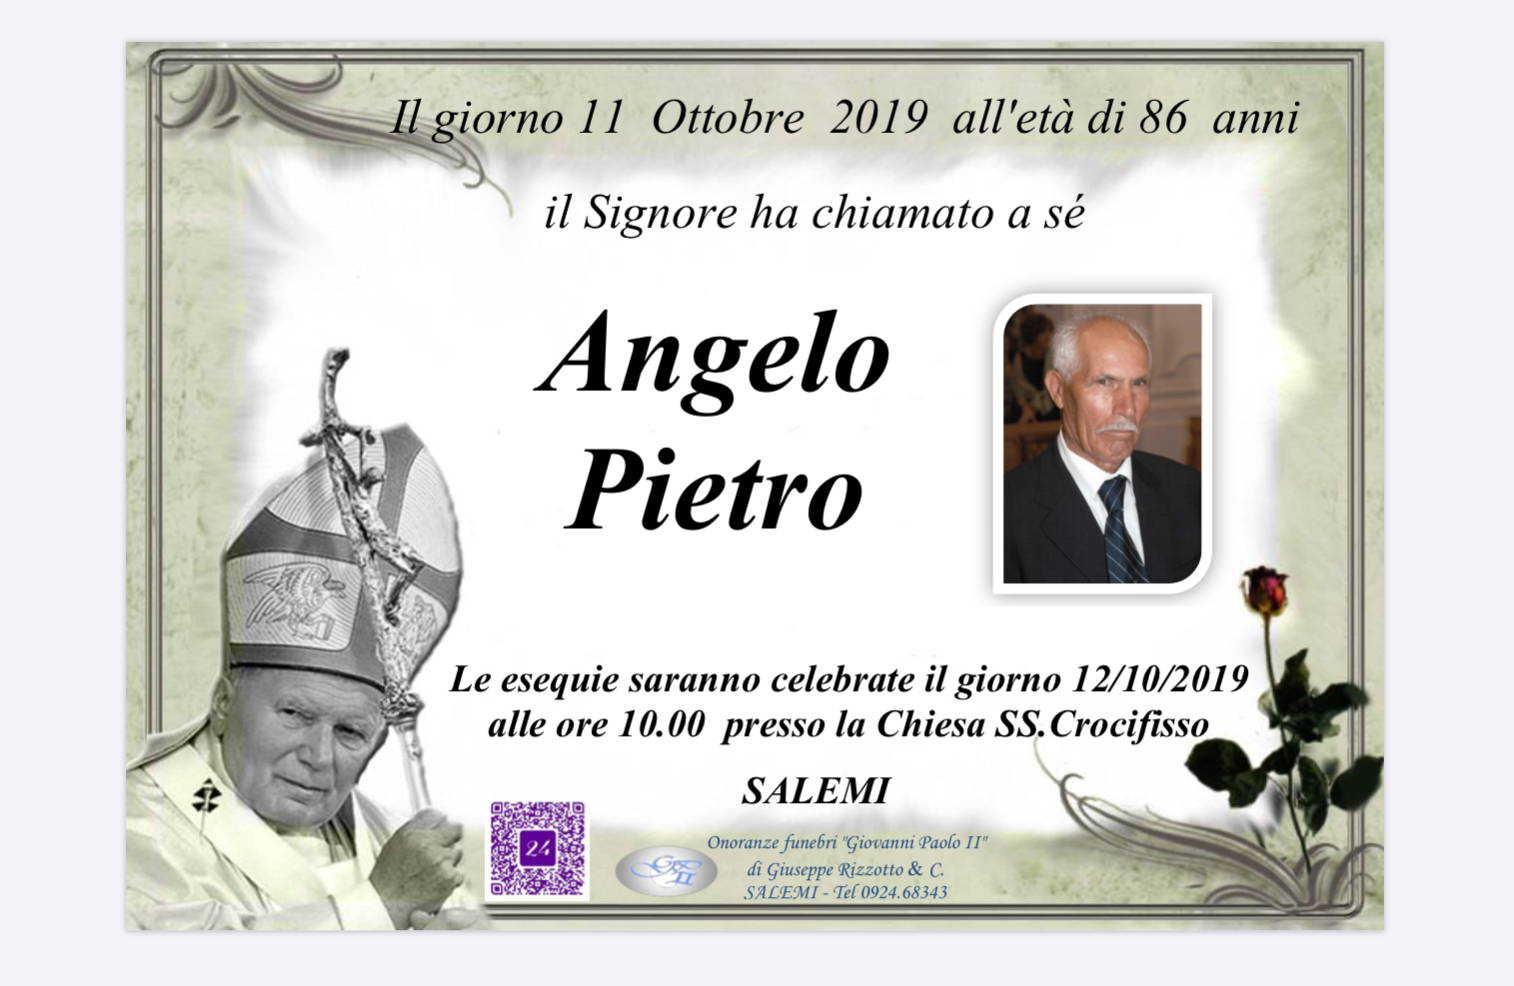 Pietro Angelo